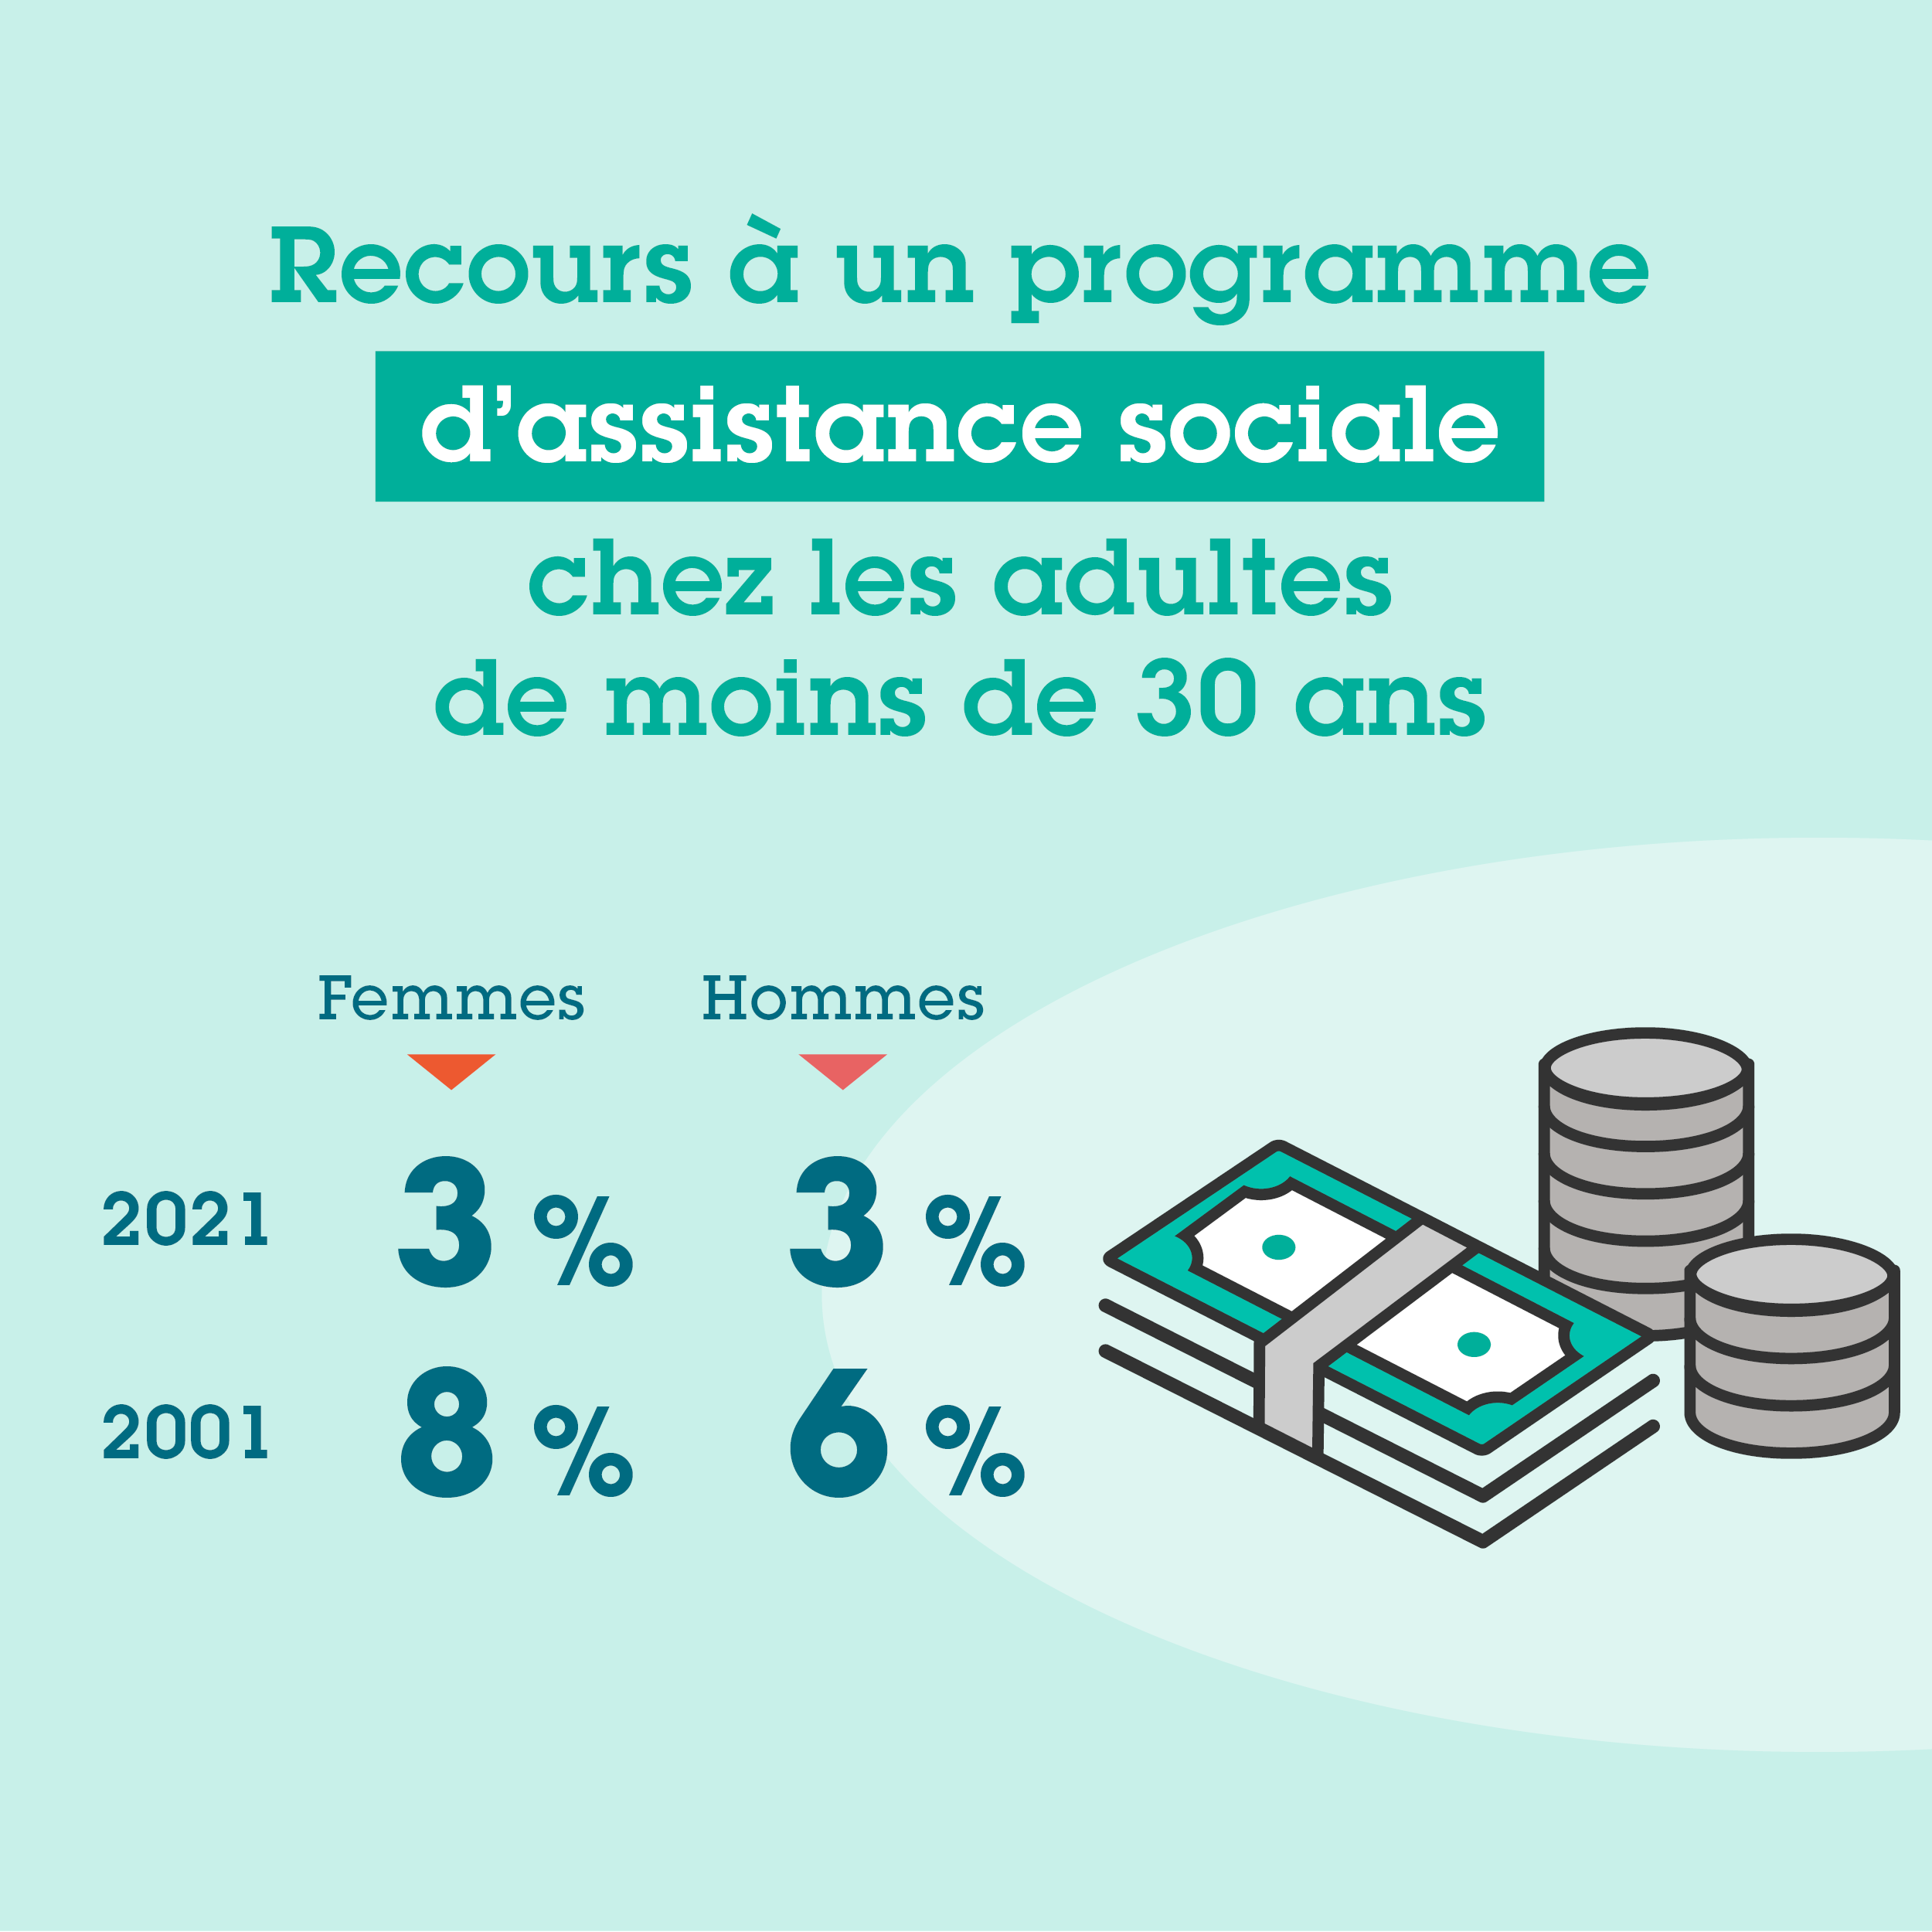 En 2021, 3 % des femmes et 3 % des hommes adultes de moins de 30 ans on eu recours à un programme d'assistance sociale, contre 8 % des femmes et 6 % des hommes en 2001.